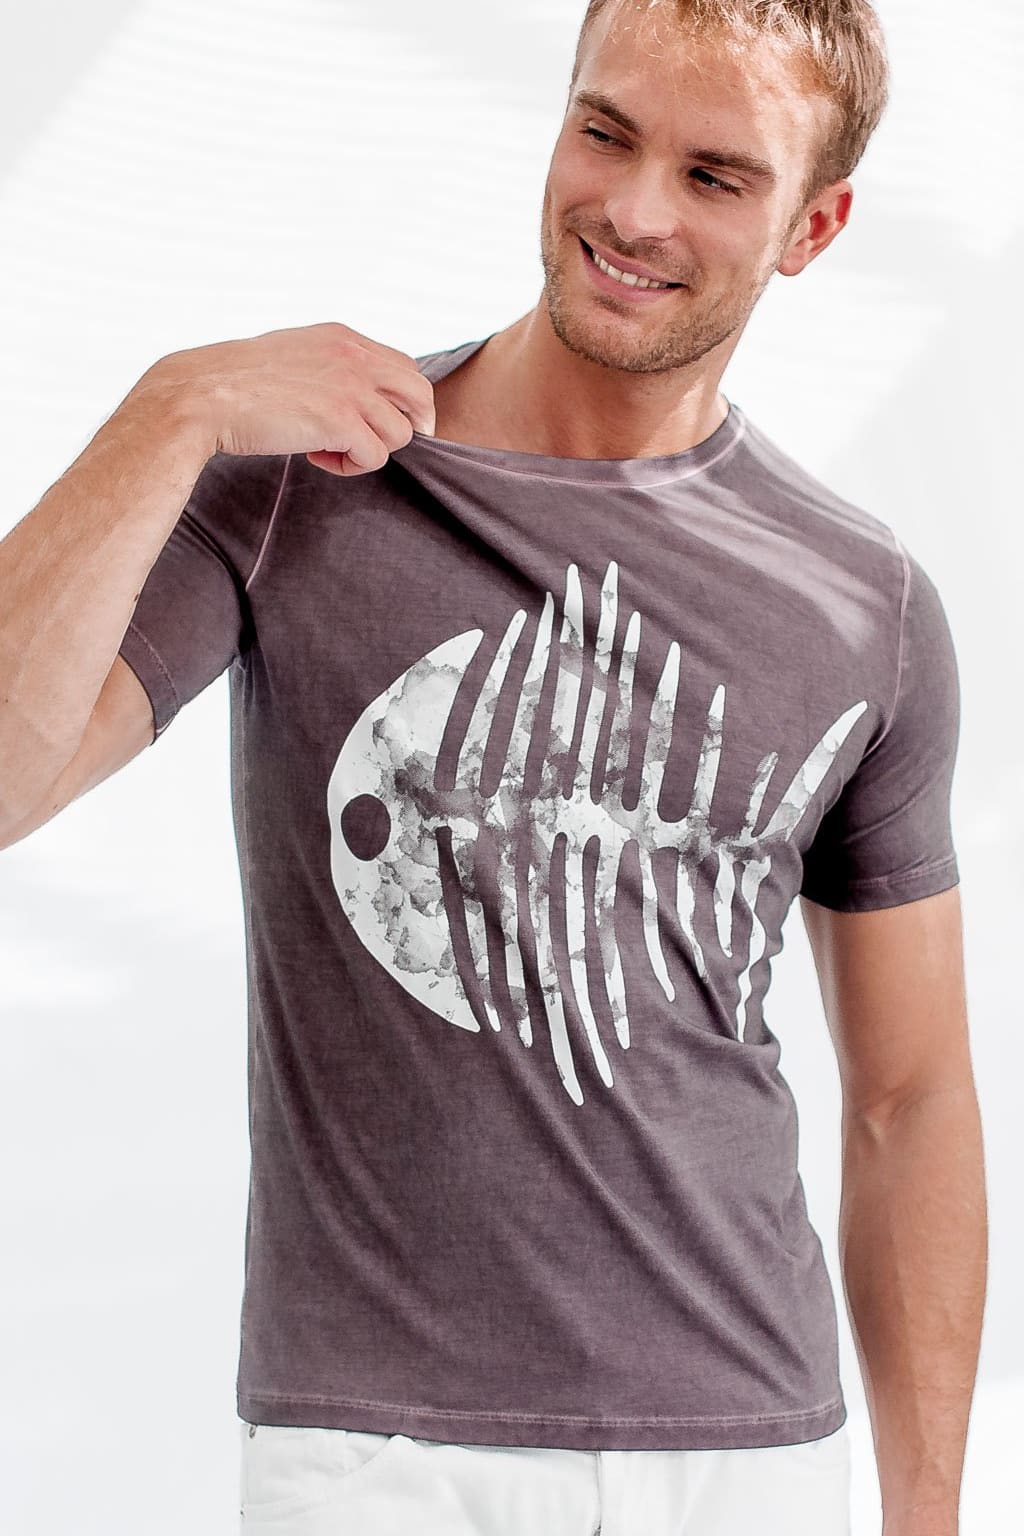 Fishbone T-Shirt - Caribe